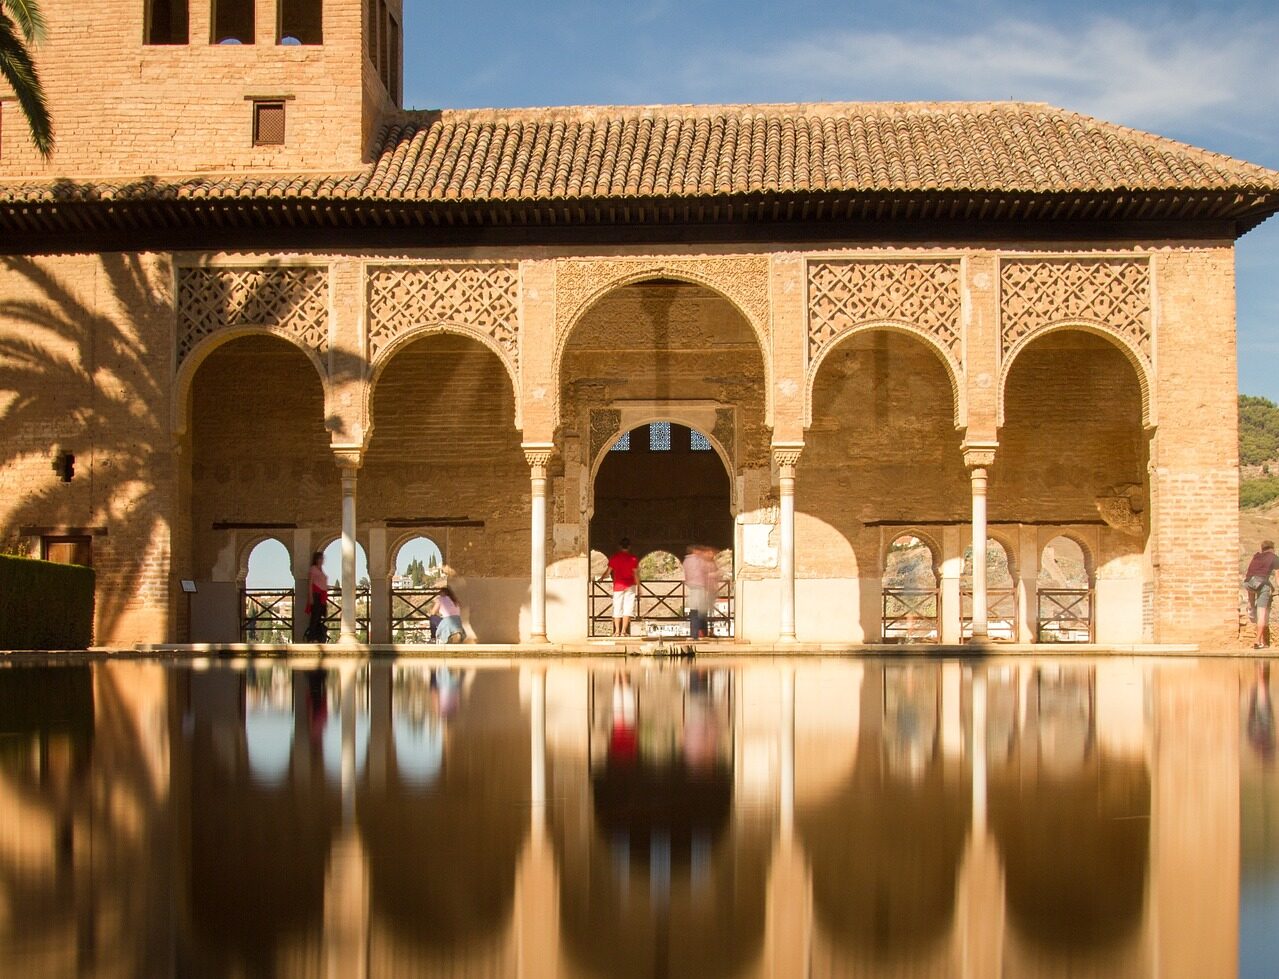 Venta de tickets Alhambra, Palacios Nazaries, Generalife y Alcazaba